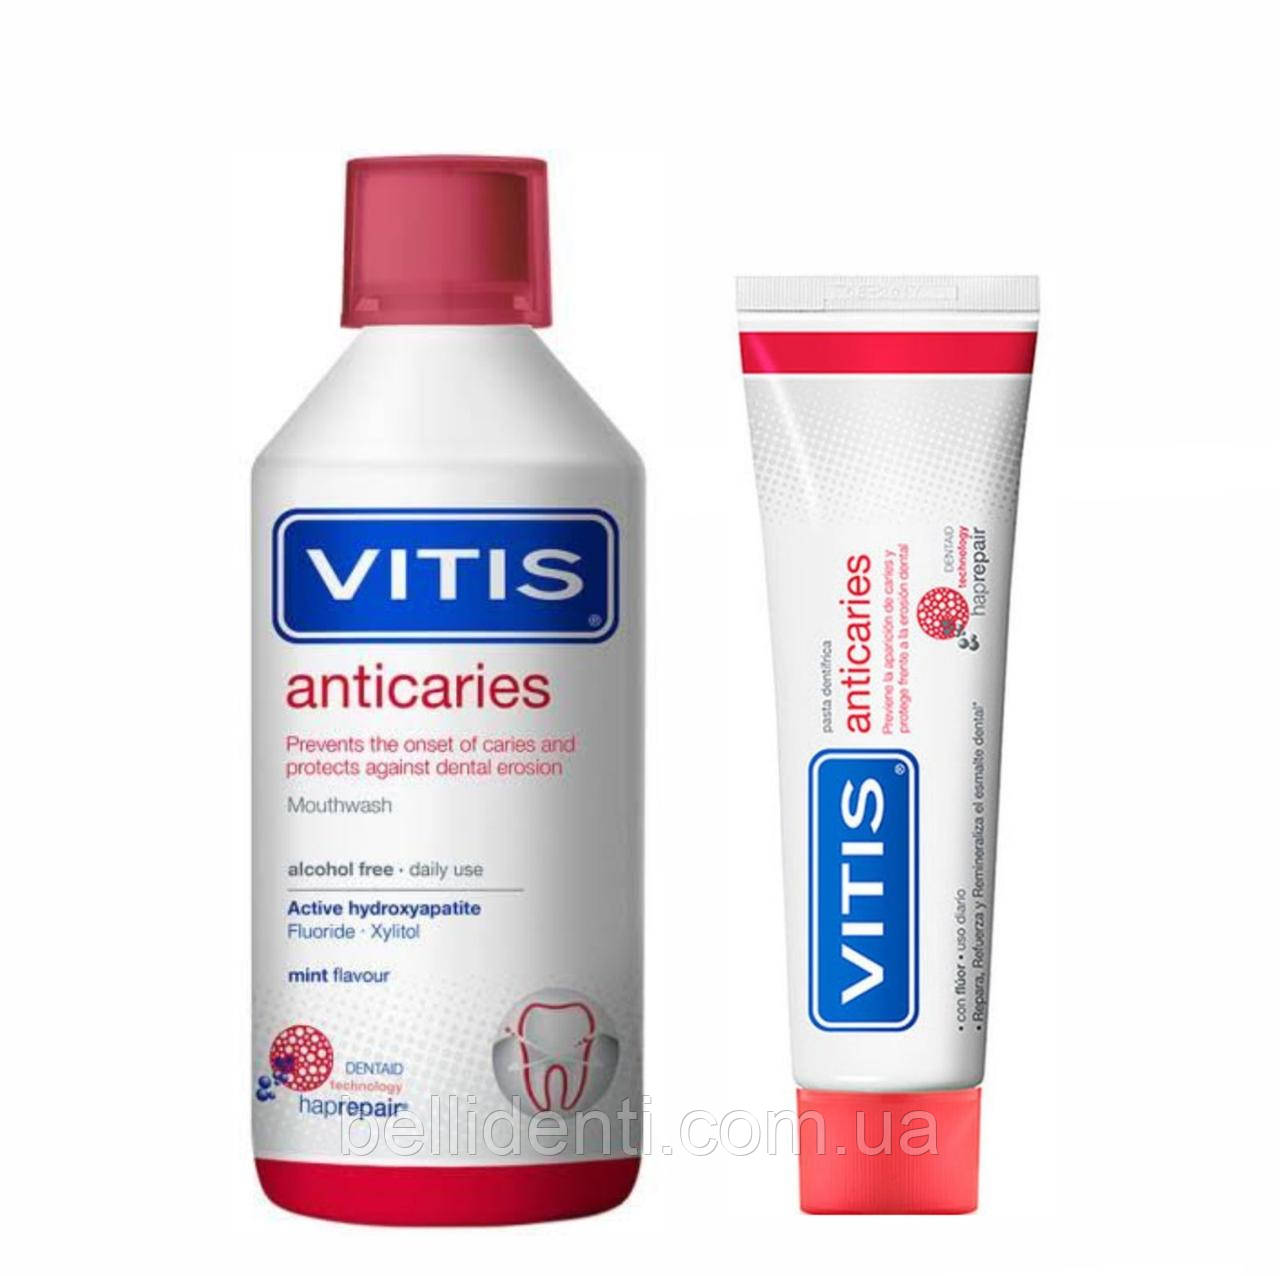 VITIS ANTICARIES набір (зубна паста 100 мл + ополіскувач 500 мл)